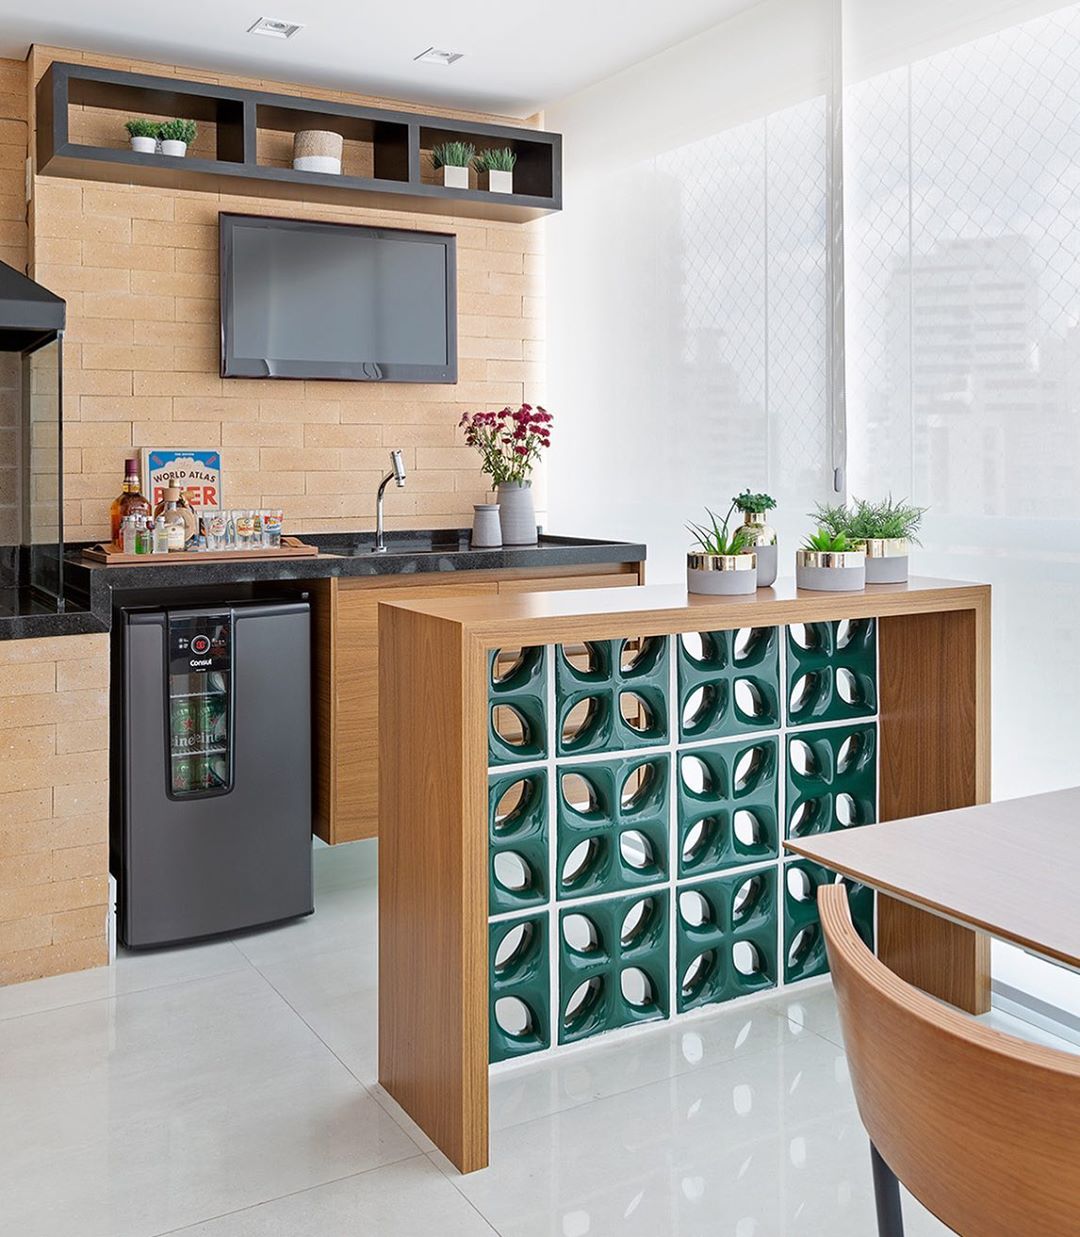 Pequeño espacio gourmet: 65 ambientes que son puro confort y elegancia